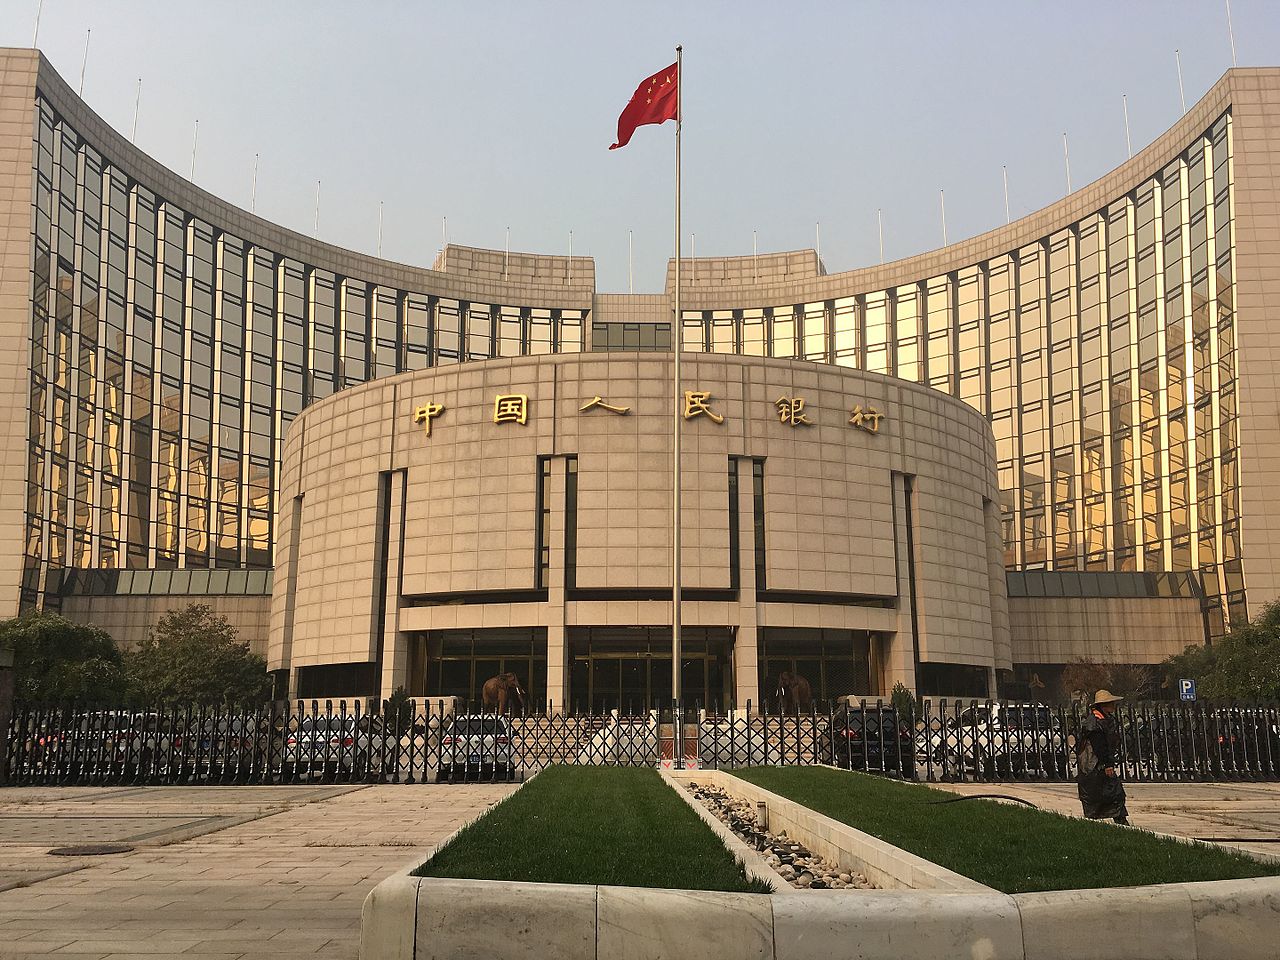 China, die zweitgrösste Volkswirtschaft der Welt, ist nach eigenen Angaben kurz davor, eine eigene Kryptowährung herauszugeben. Eine Einführung stehe "kurz bevor", sagte Mu Changchun, Vizedirektor für den Zahlungsverkehr in der chinesischen Notenbank, am Wochenende auf einer Konferenz in Yichun in der Provinz Heilongjiang.